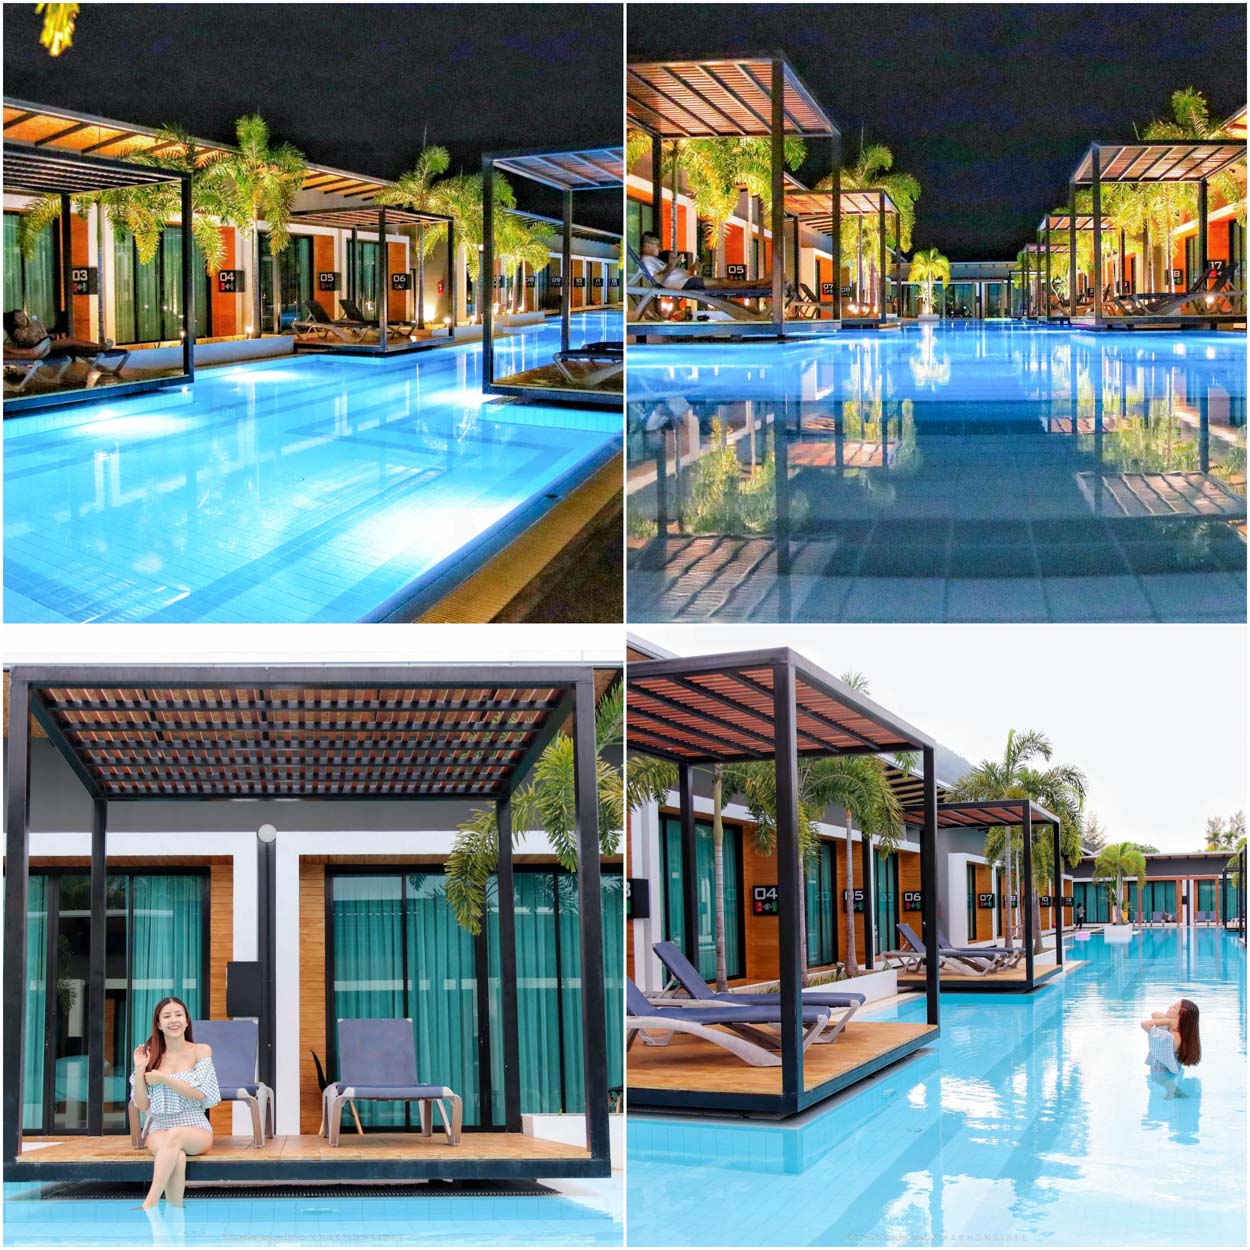 Asura-Resort-LANTA-ที่พักกระบี่ Asura-Resort-LANTA-อสุรารีสอร์ท-เกาะลันตา-จังหวัดกระบี่รีสอร์ทสวยๆ-ฟินๆสุดชิค-ที่เรียกได้ว่านอนฟินริมสระทุกห้อง-แถมเปิดประตู-2-3-ก้าวแล้วกระโดดลงสระได้เลย-สระว่ายน้ำยาวปังๆ-แถมมีสระเด็ก-อาหารเช้าบุฟเฟต์จัดเต็ม-ทั้งรสชาติ-และหน้าตา-มีเซ็ตดินเนอร์ฟินๆให้บริการ-ห่างจากหาดคลองดาวไม่ไกล-เดินเพียง-1-นาทีก็ถึง ที่พัก,กระบี่,อ่าวนาง,วิวหลักล้าน,โรงแรม,รีสอร์ท,krabi,เกาะพีพี